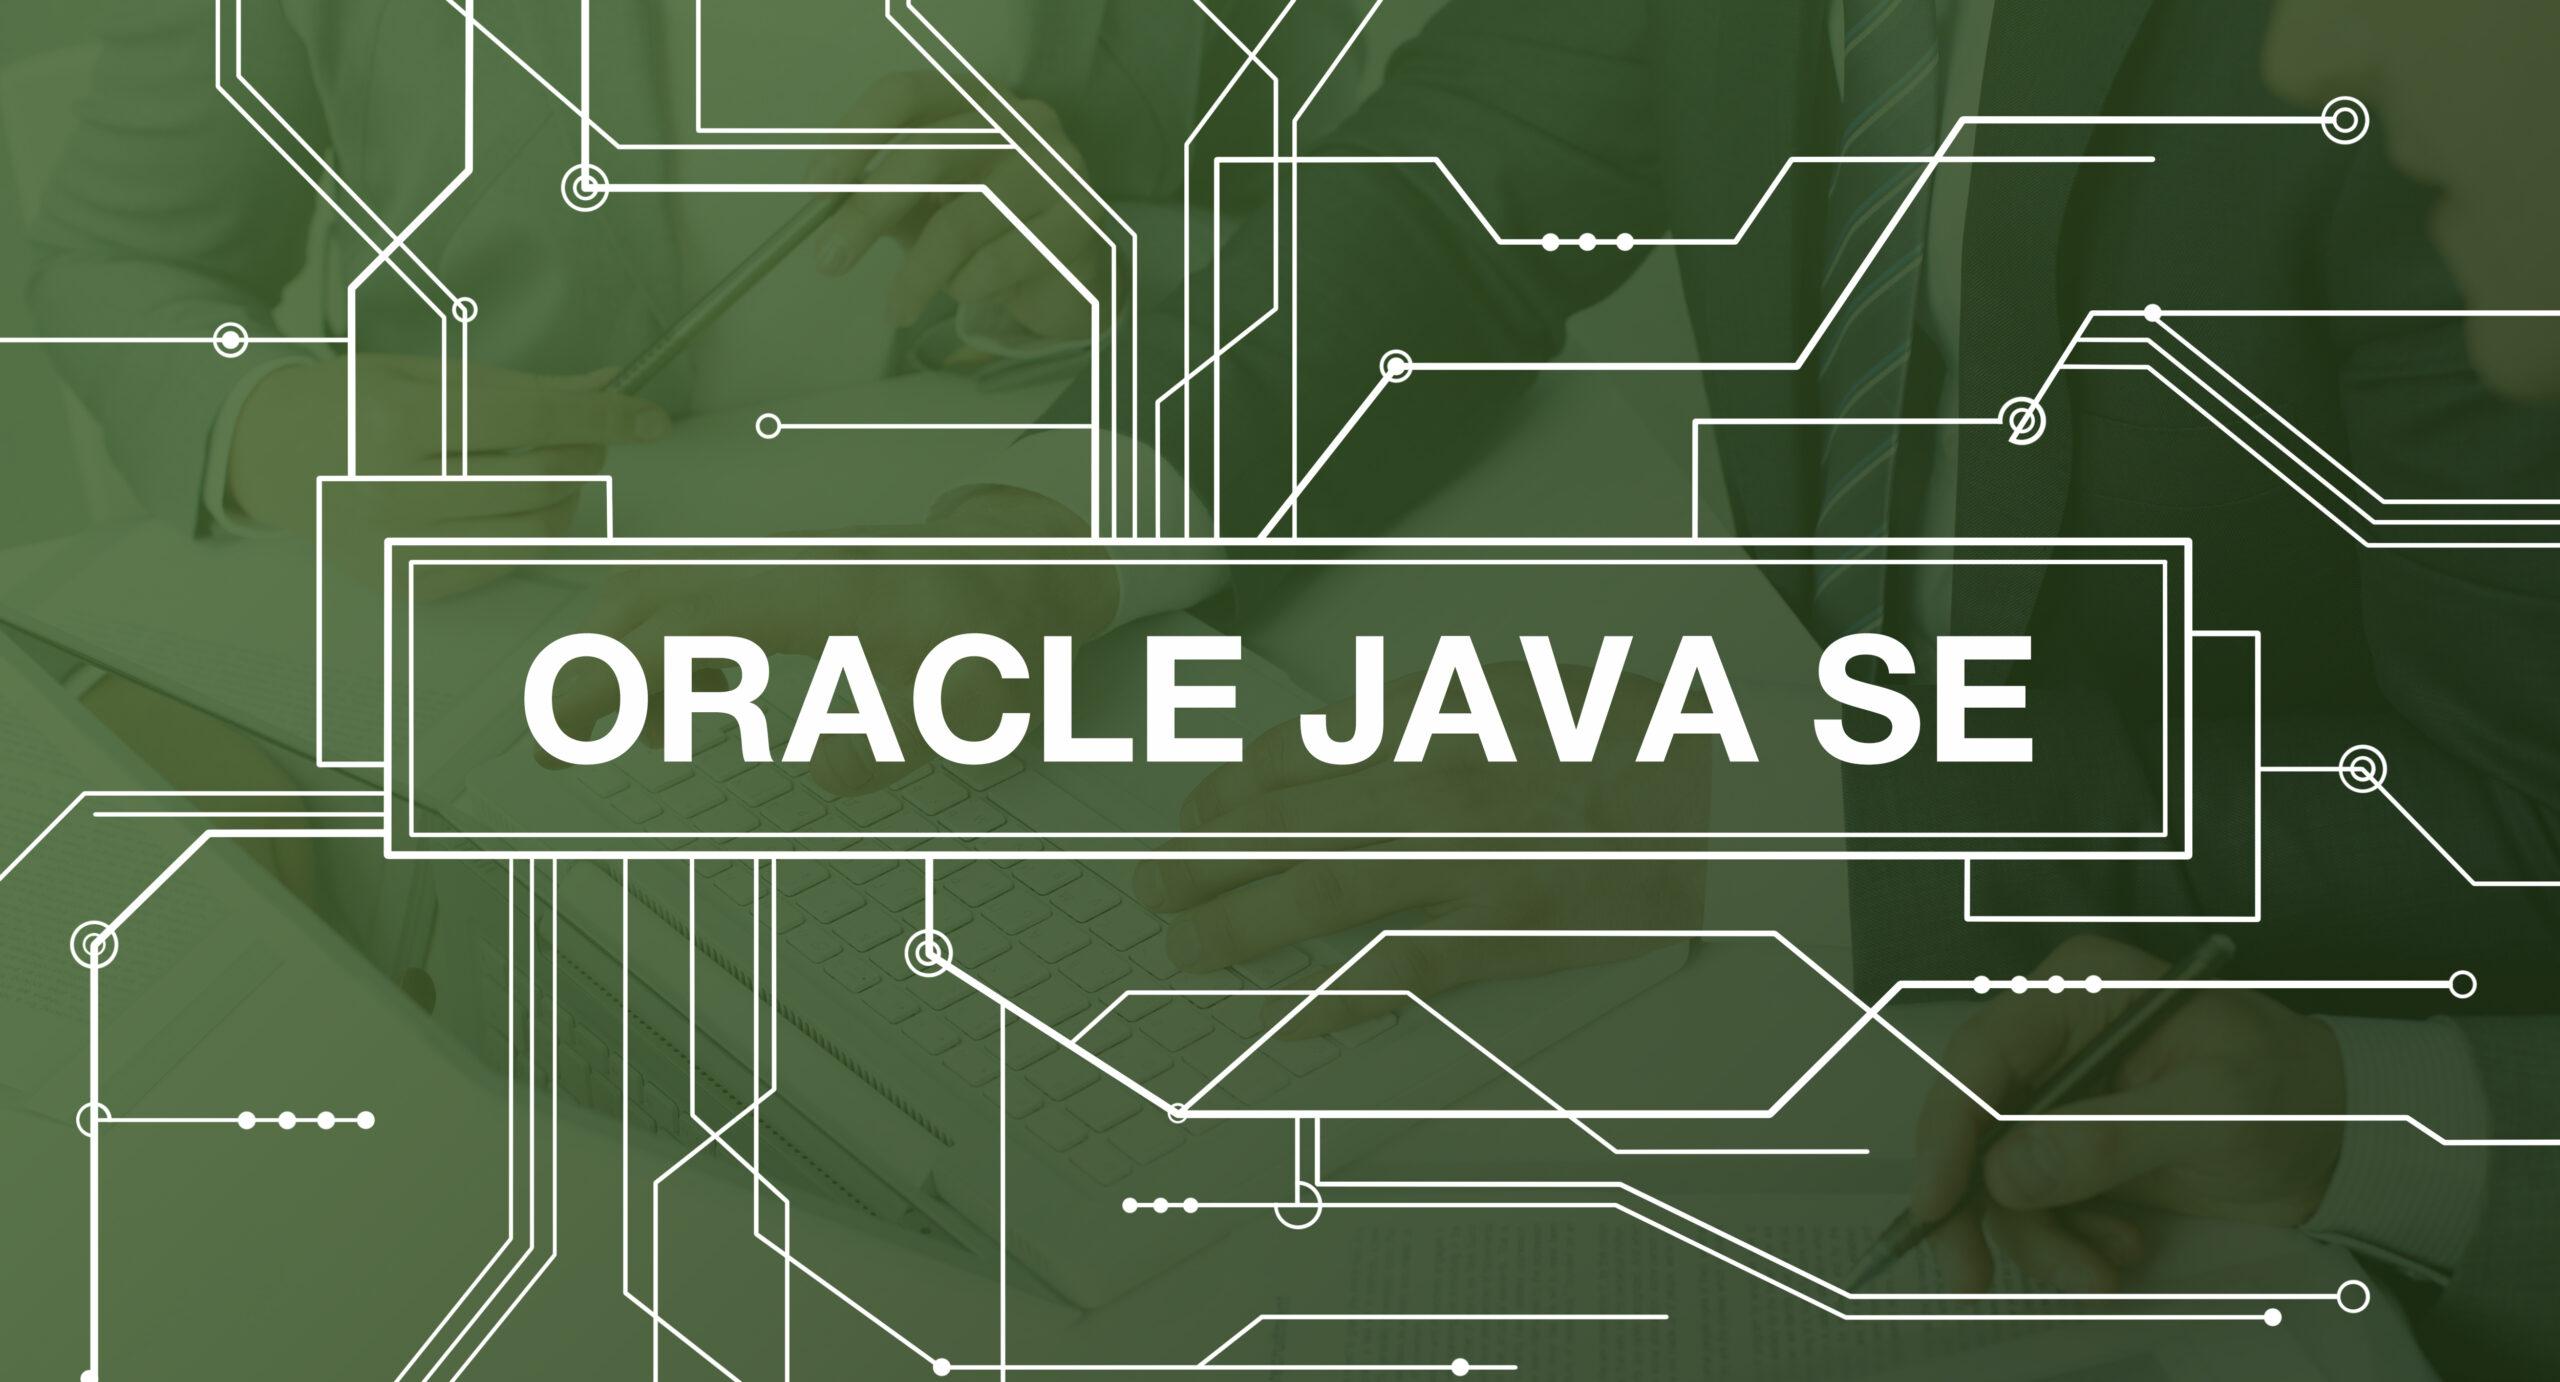 Oracle Java SE